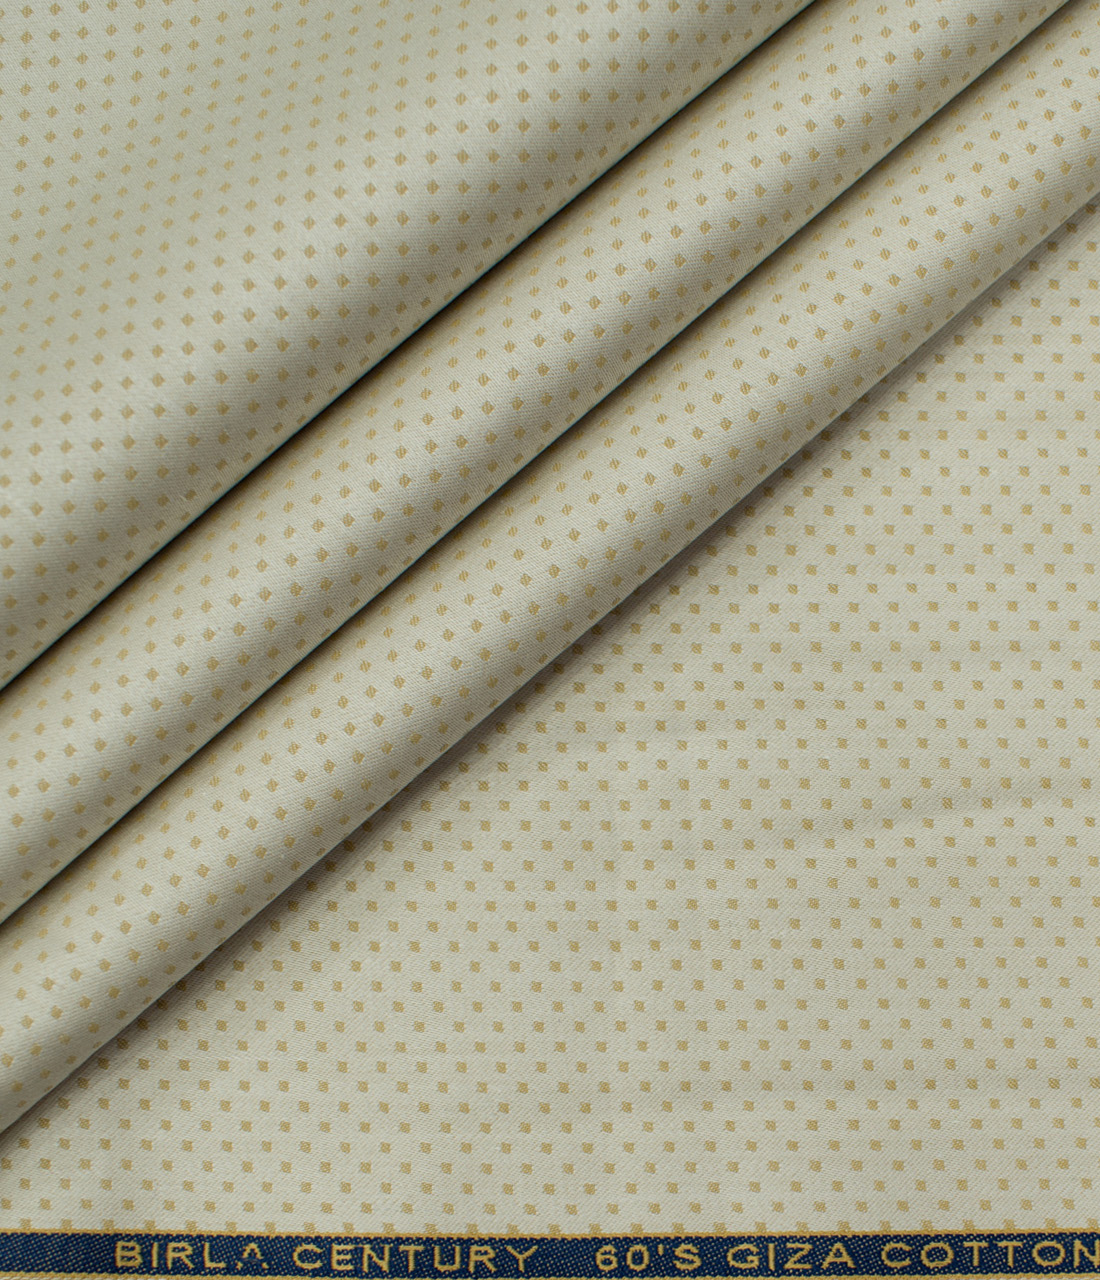 Birla Century Men's Giza Cotton Structured Unstitched Shirting Fabric (ButterMilk Beige)